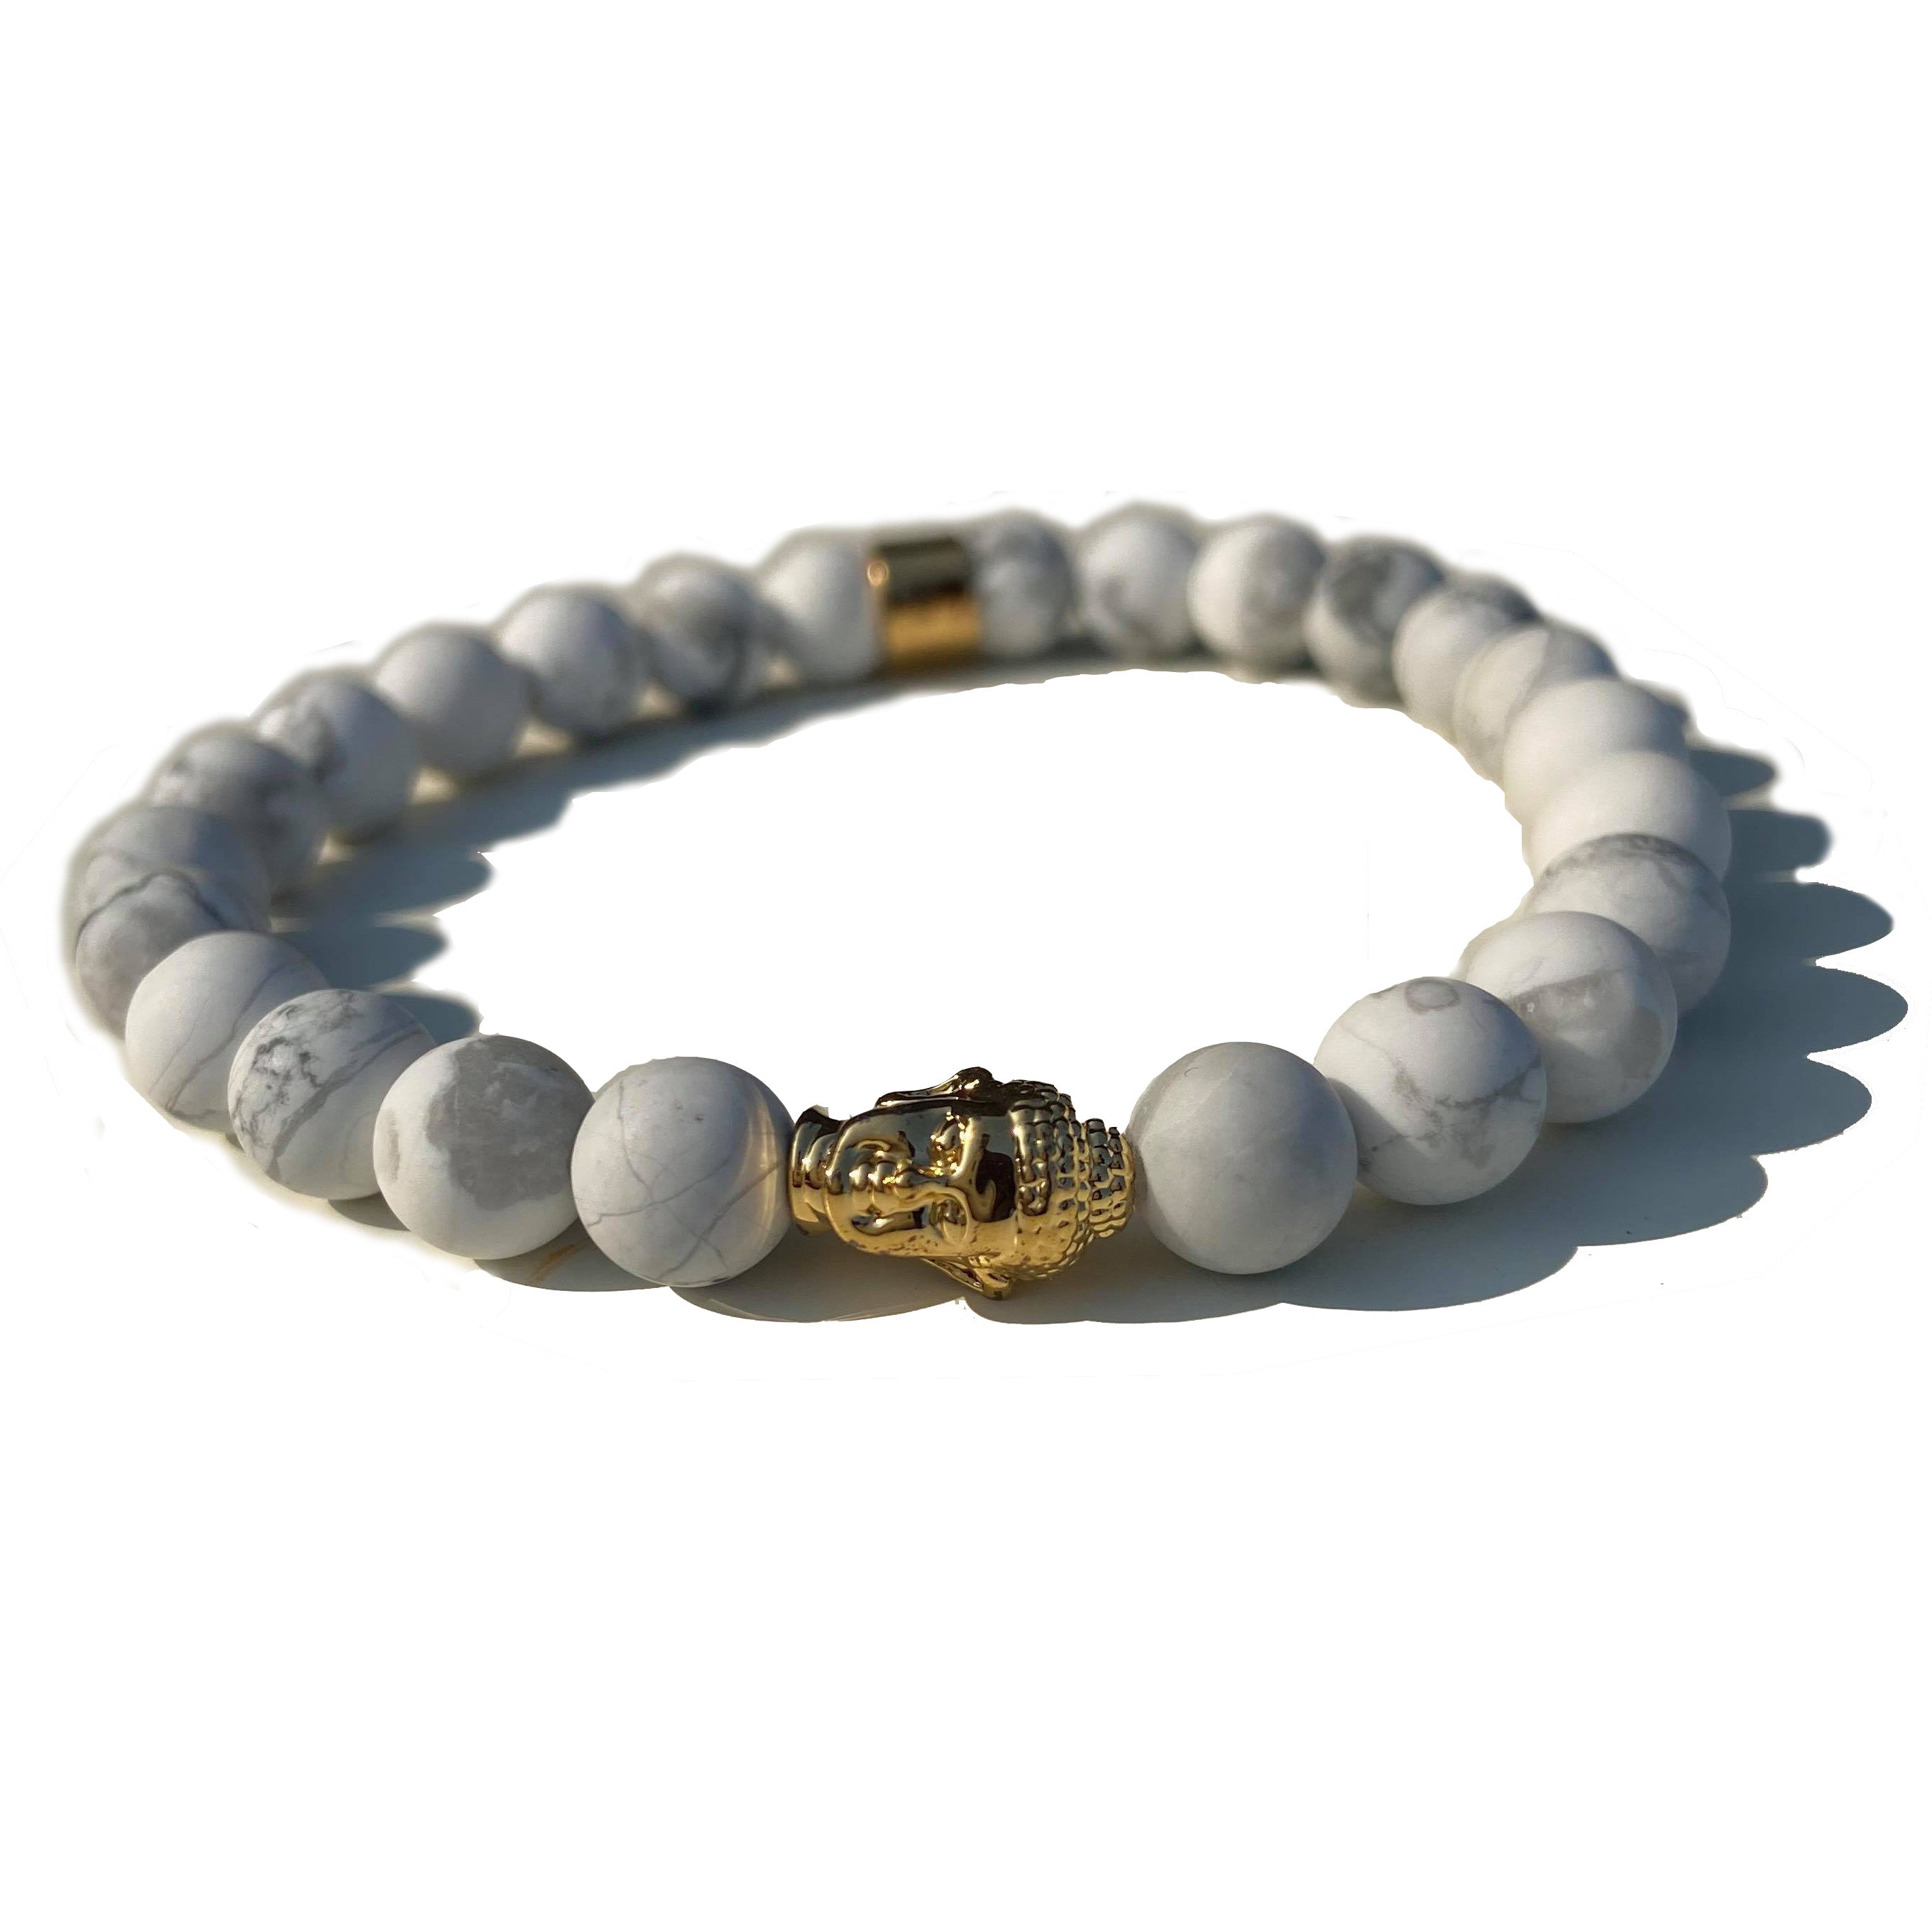 The Buddha Beaded Skull Bracelet - White / Gold